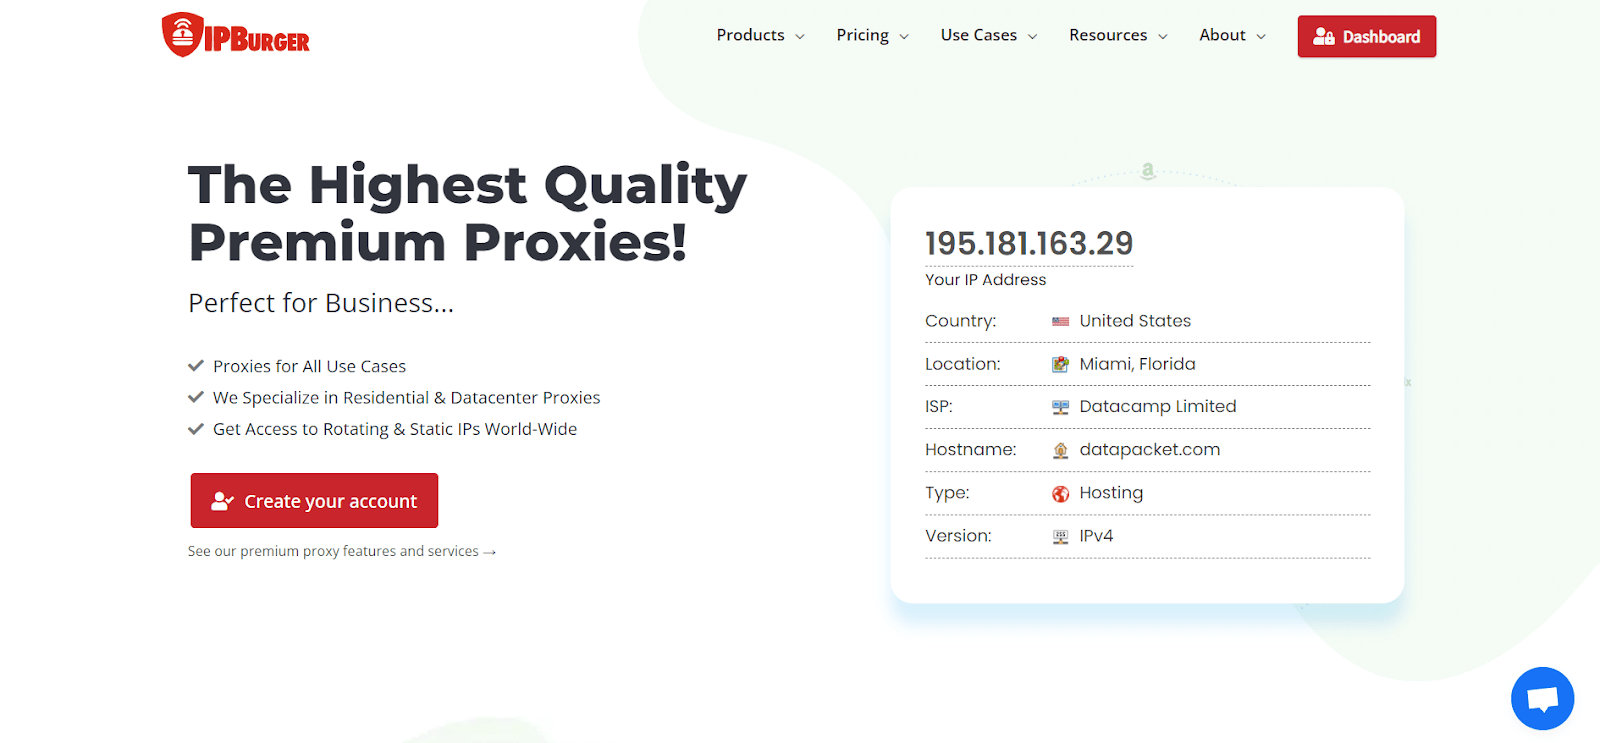 ipburger premium proxies